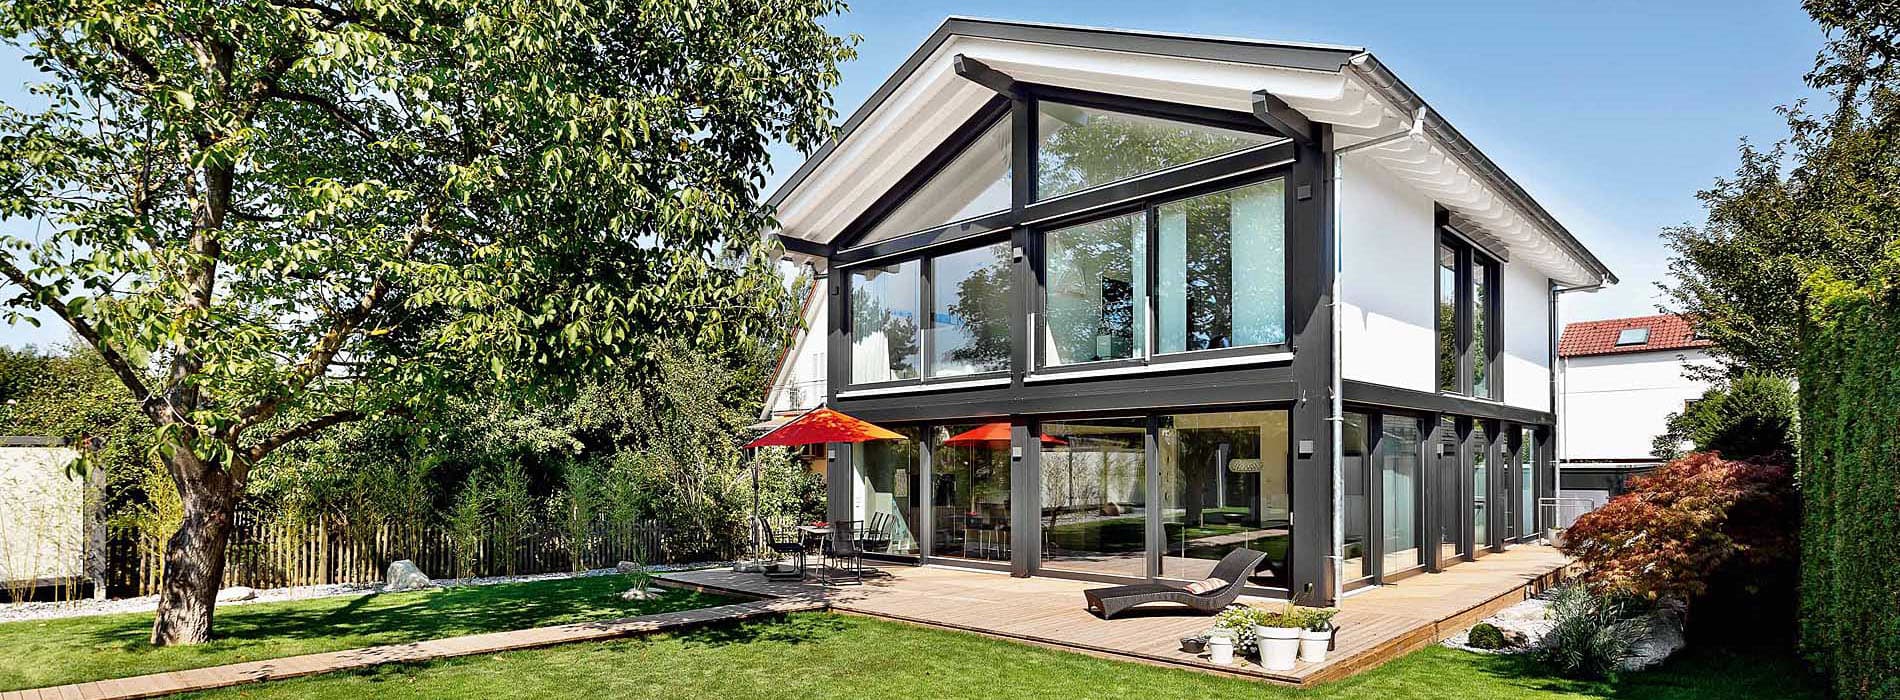 Terrasse bauen oder mitsamt Haus kaufen - Inspiration ...